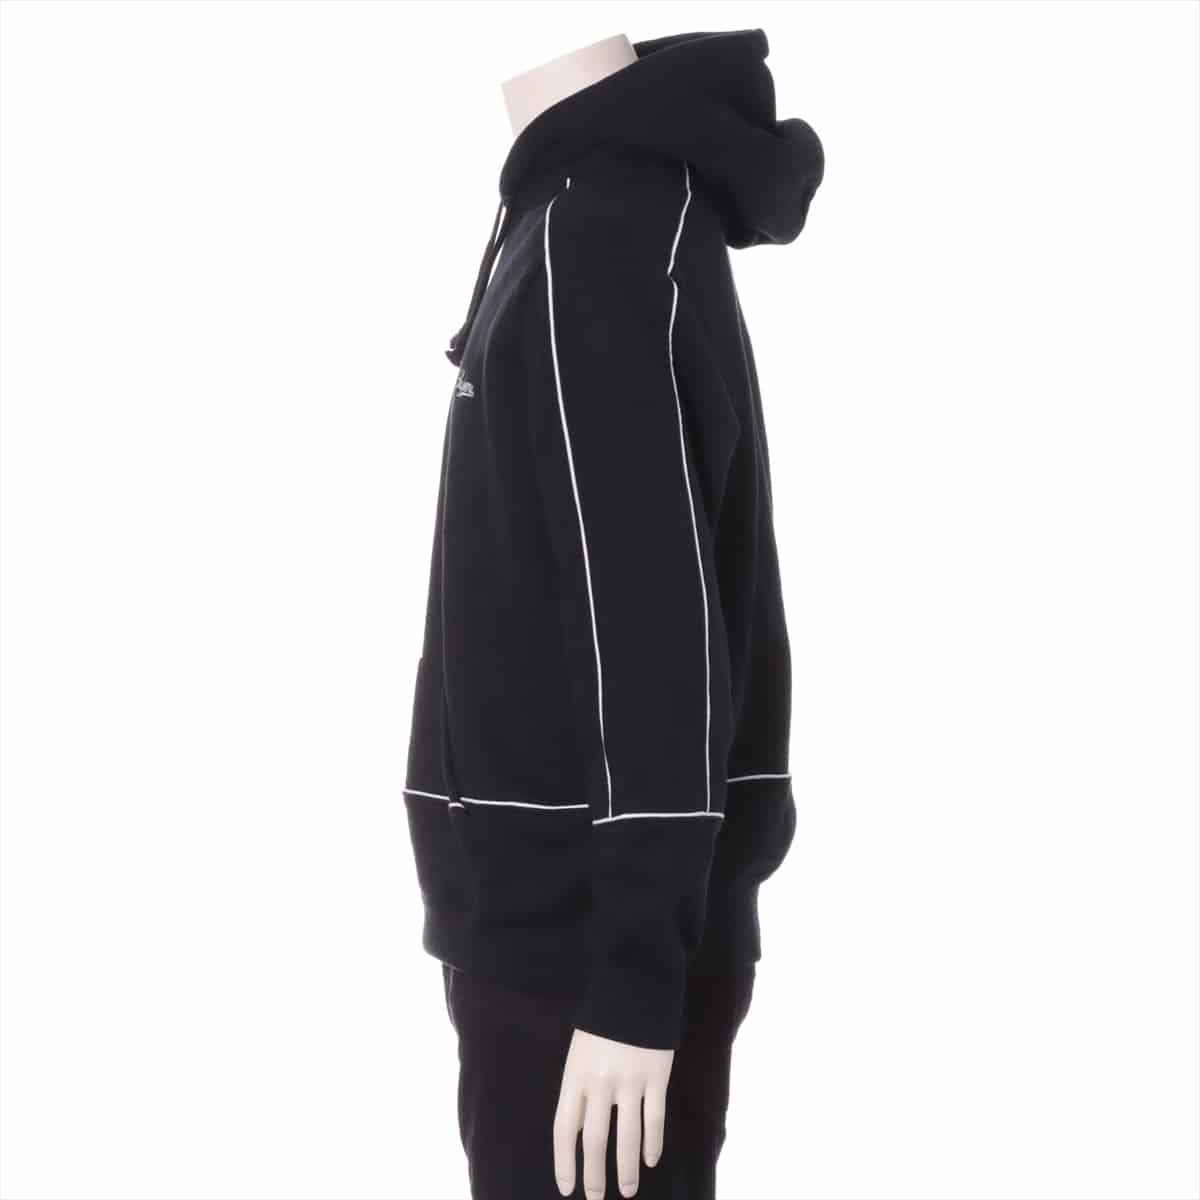 シュプリーム 18SS コットン パーカー S メンズ ブラック  Piping Hooded Sweatshirt